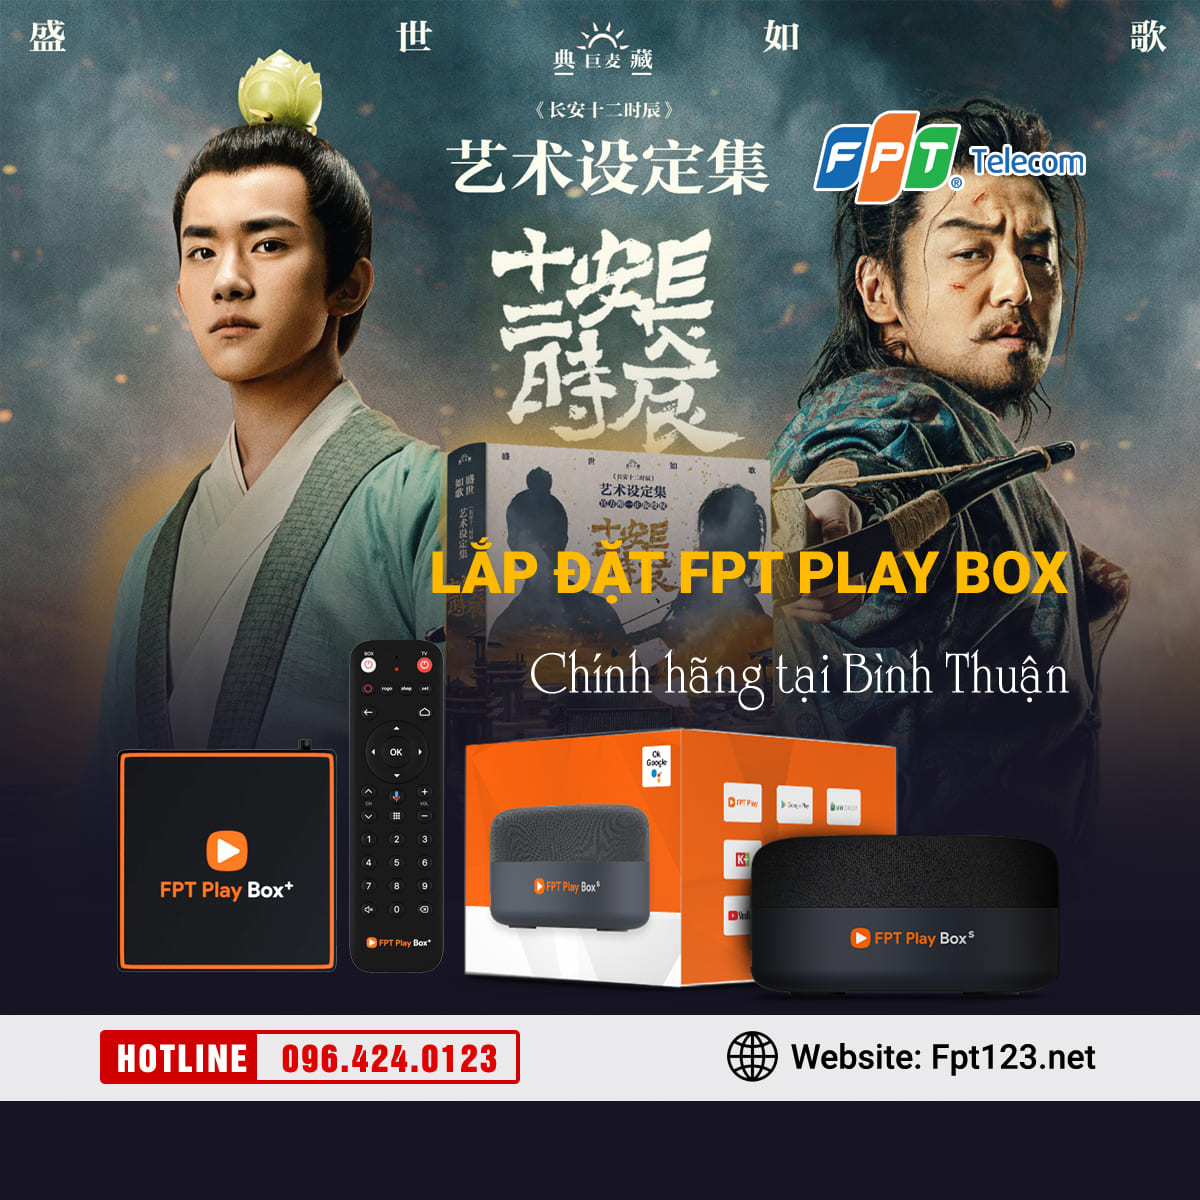 Lắp đặt FPT Play Box chính hãng tại Bình Thuận